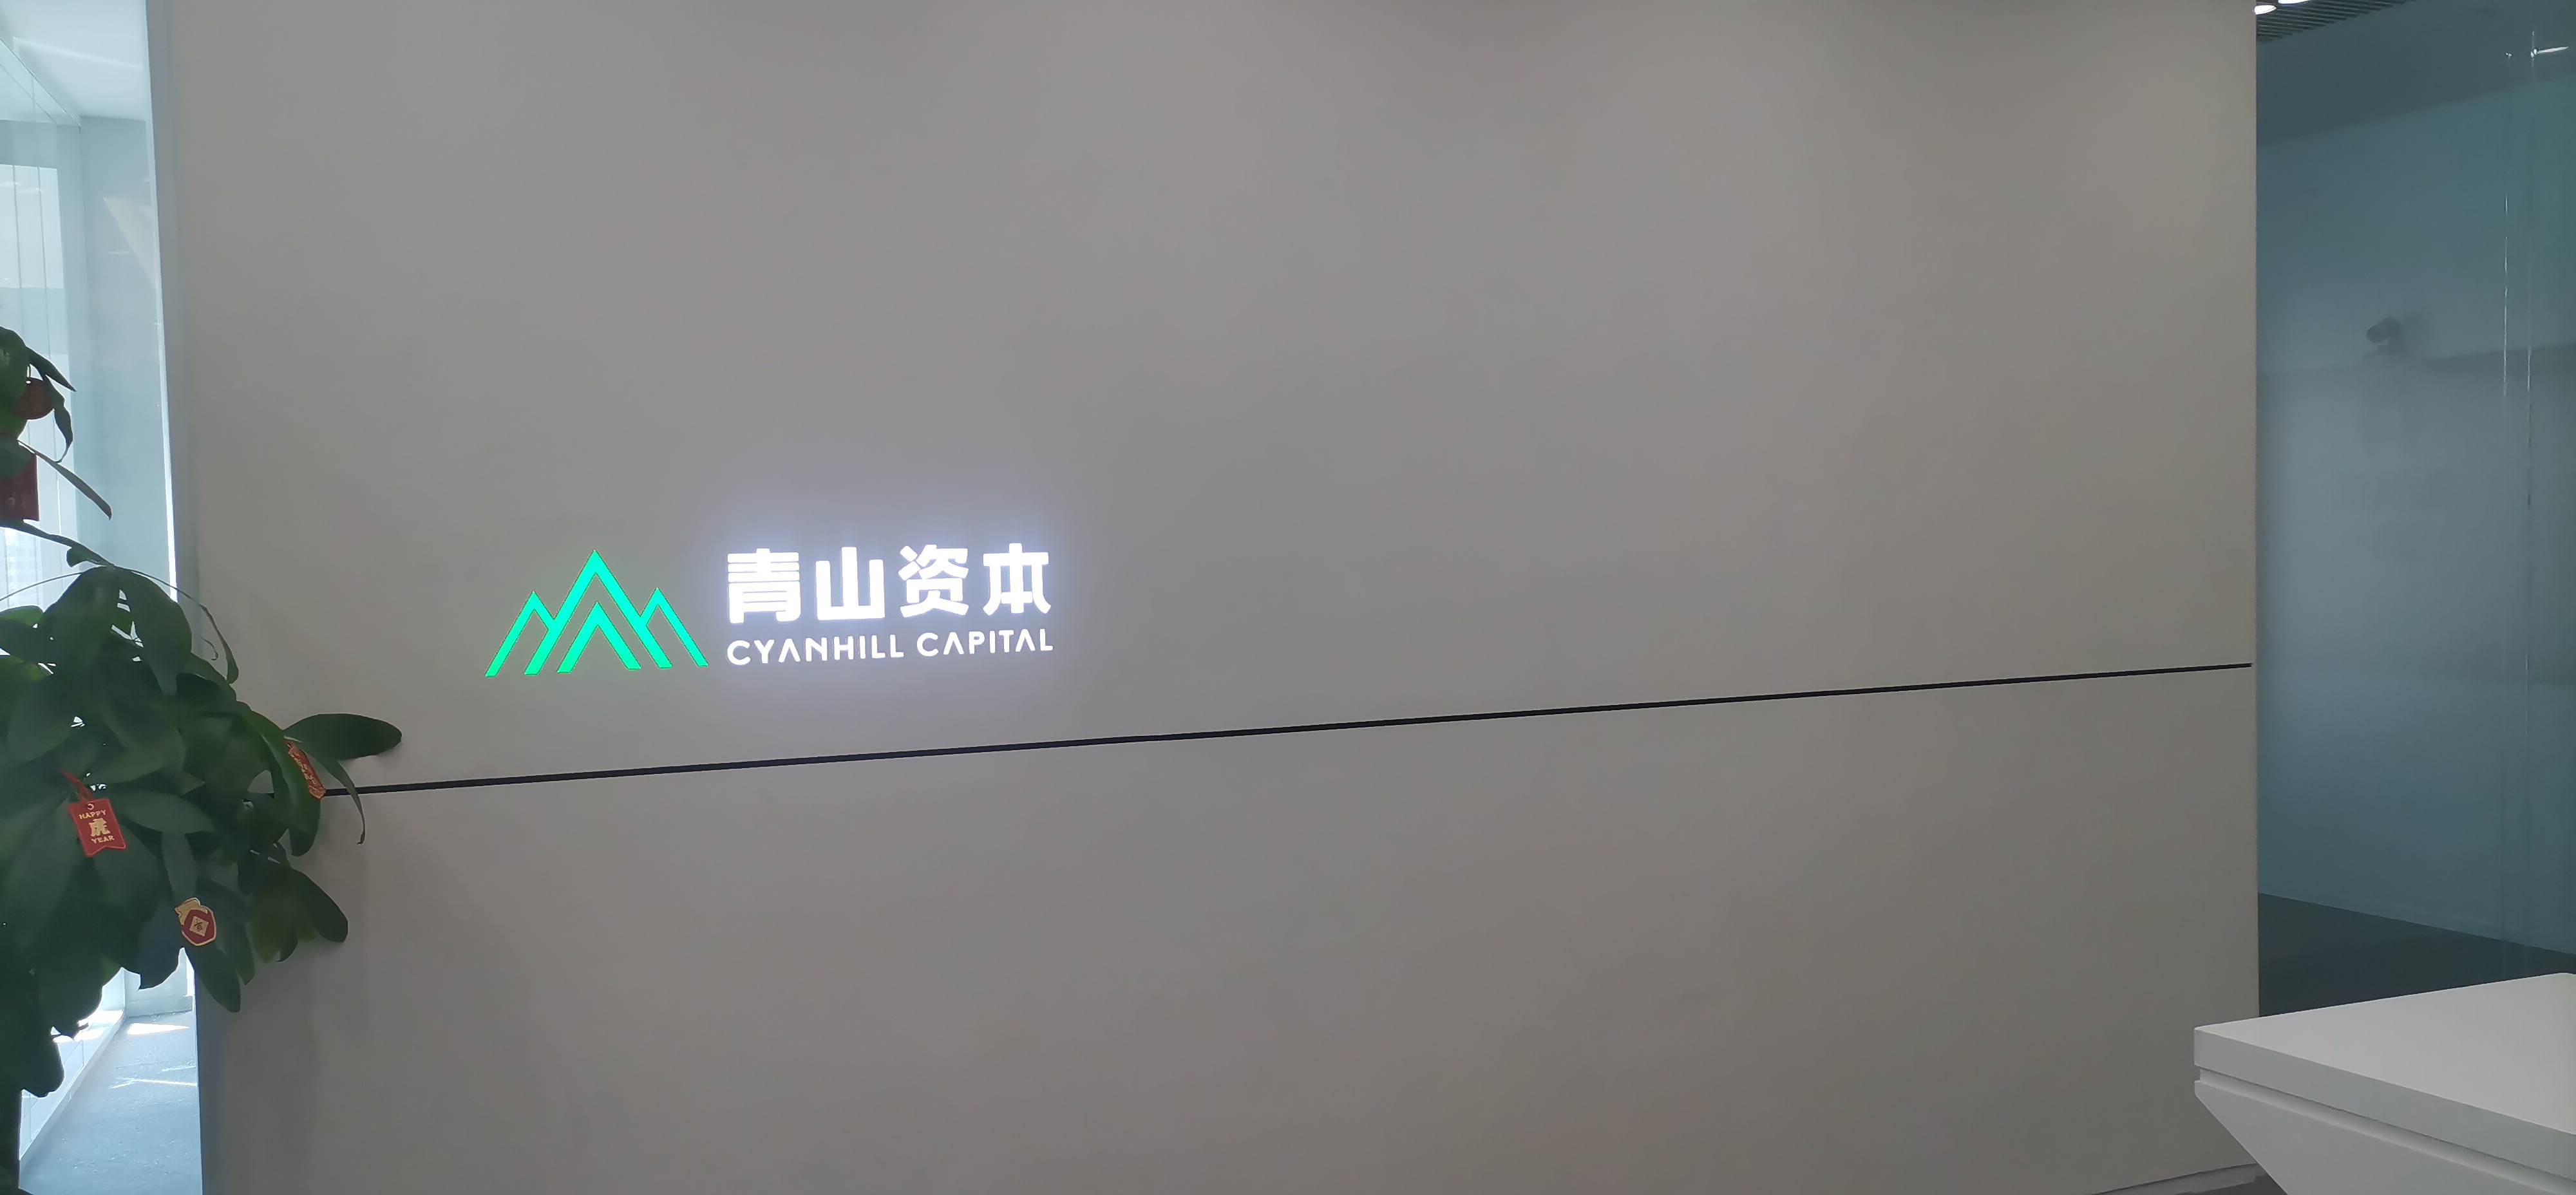 【飞书会议室】北京青山同创投资有限公司飞书会议室搭建项目